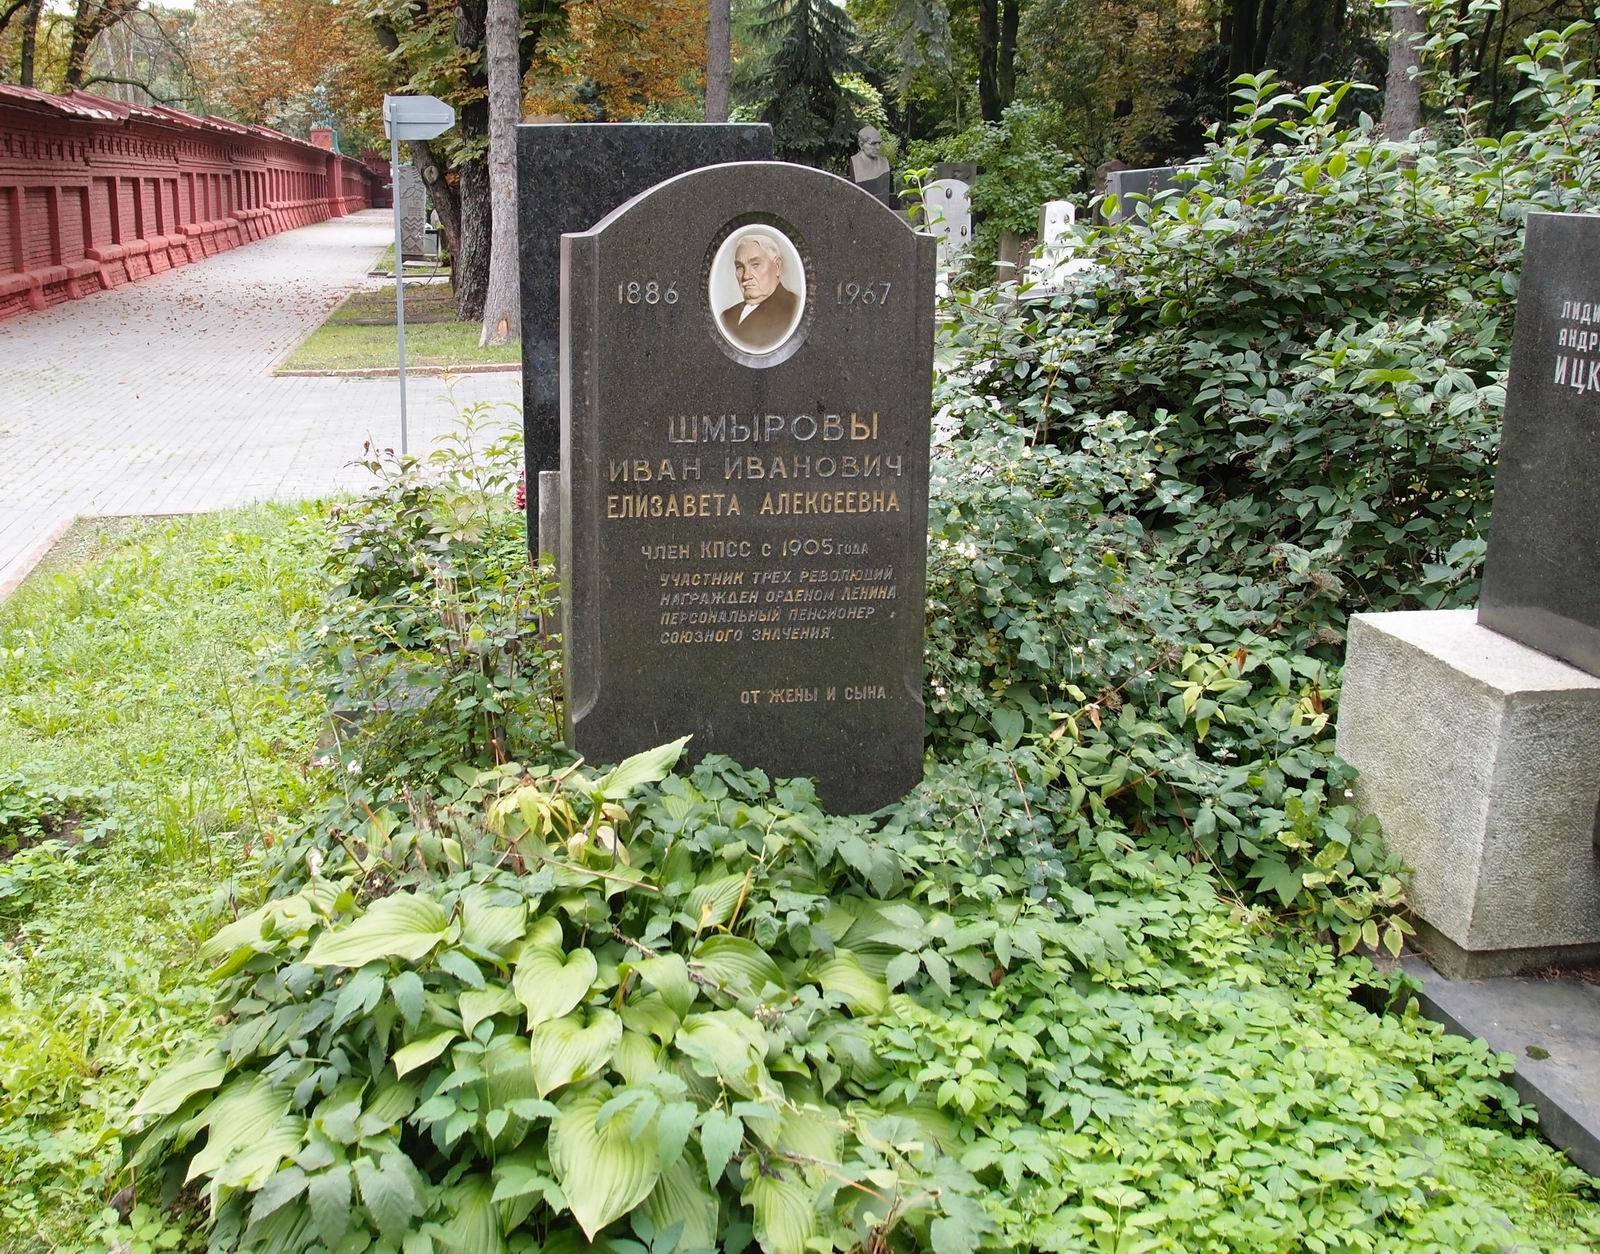 Памятник на могиле Шмырова И.И. (1886–1967), на Новодевичьем кладбище (7–2–1).